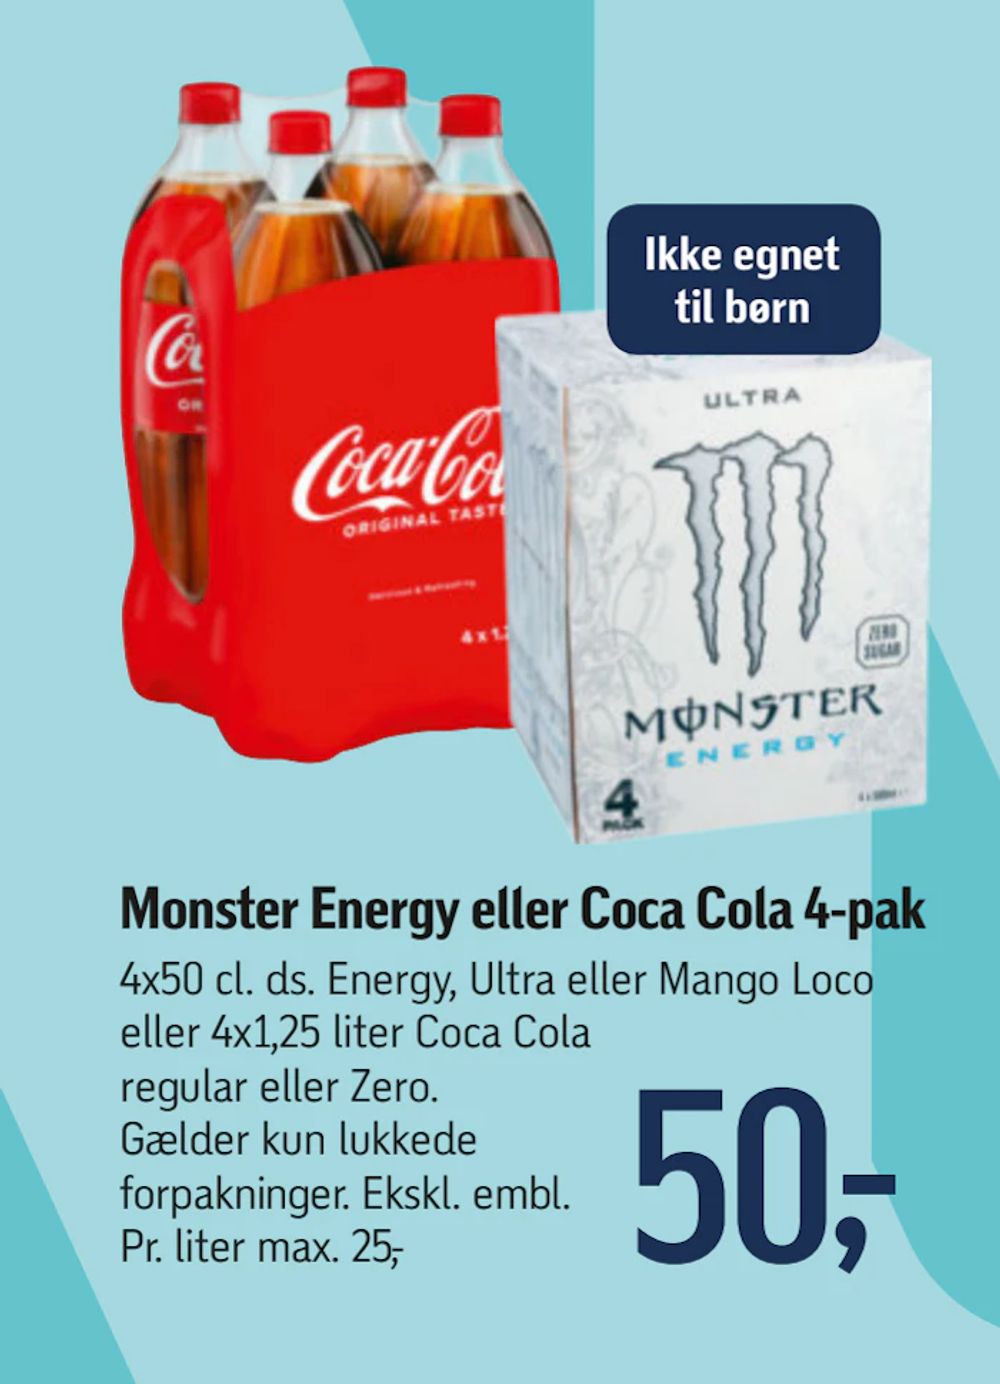 Tilbud på Monster Energy eller Coca Cola 4-pak fra føtex til 50 kr.